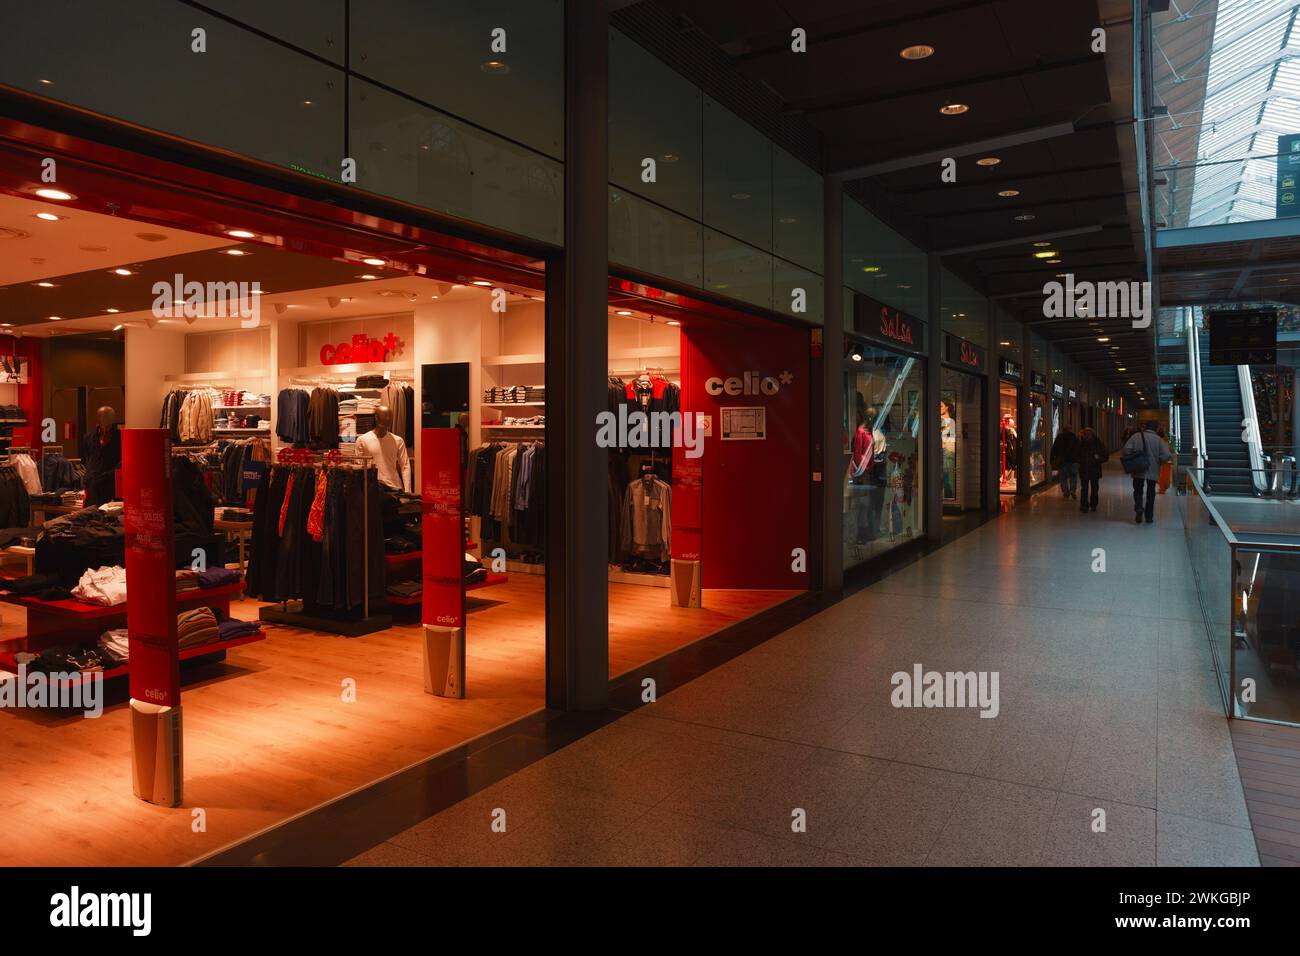 Celio magasin de vêtements au centre commercial Gare St Lazare, Paris, France | magasin de vêtements modernes devant un centre commercial avec façade en verre et intérieur Banque D'Images